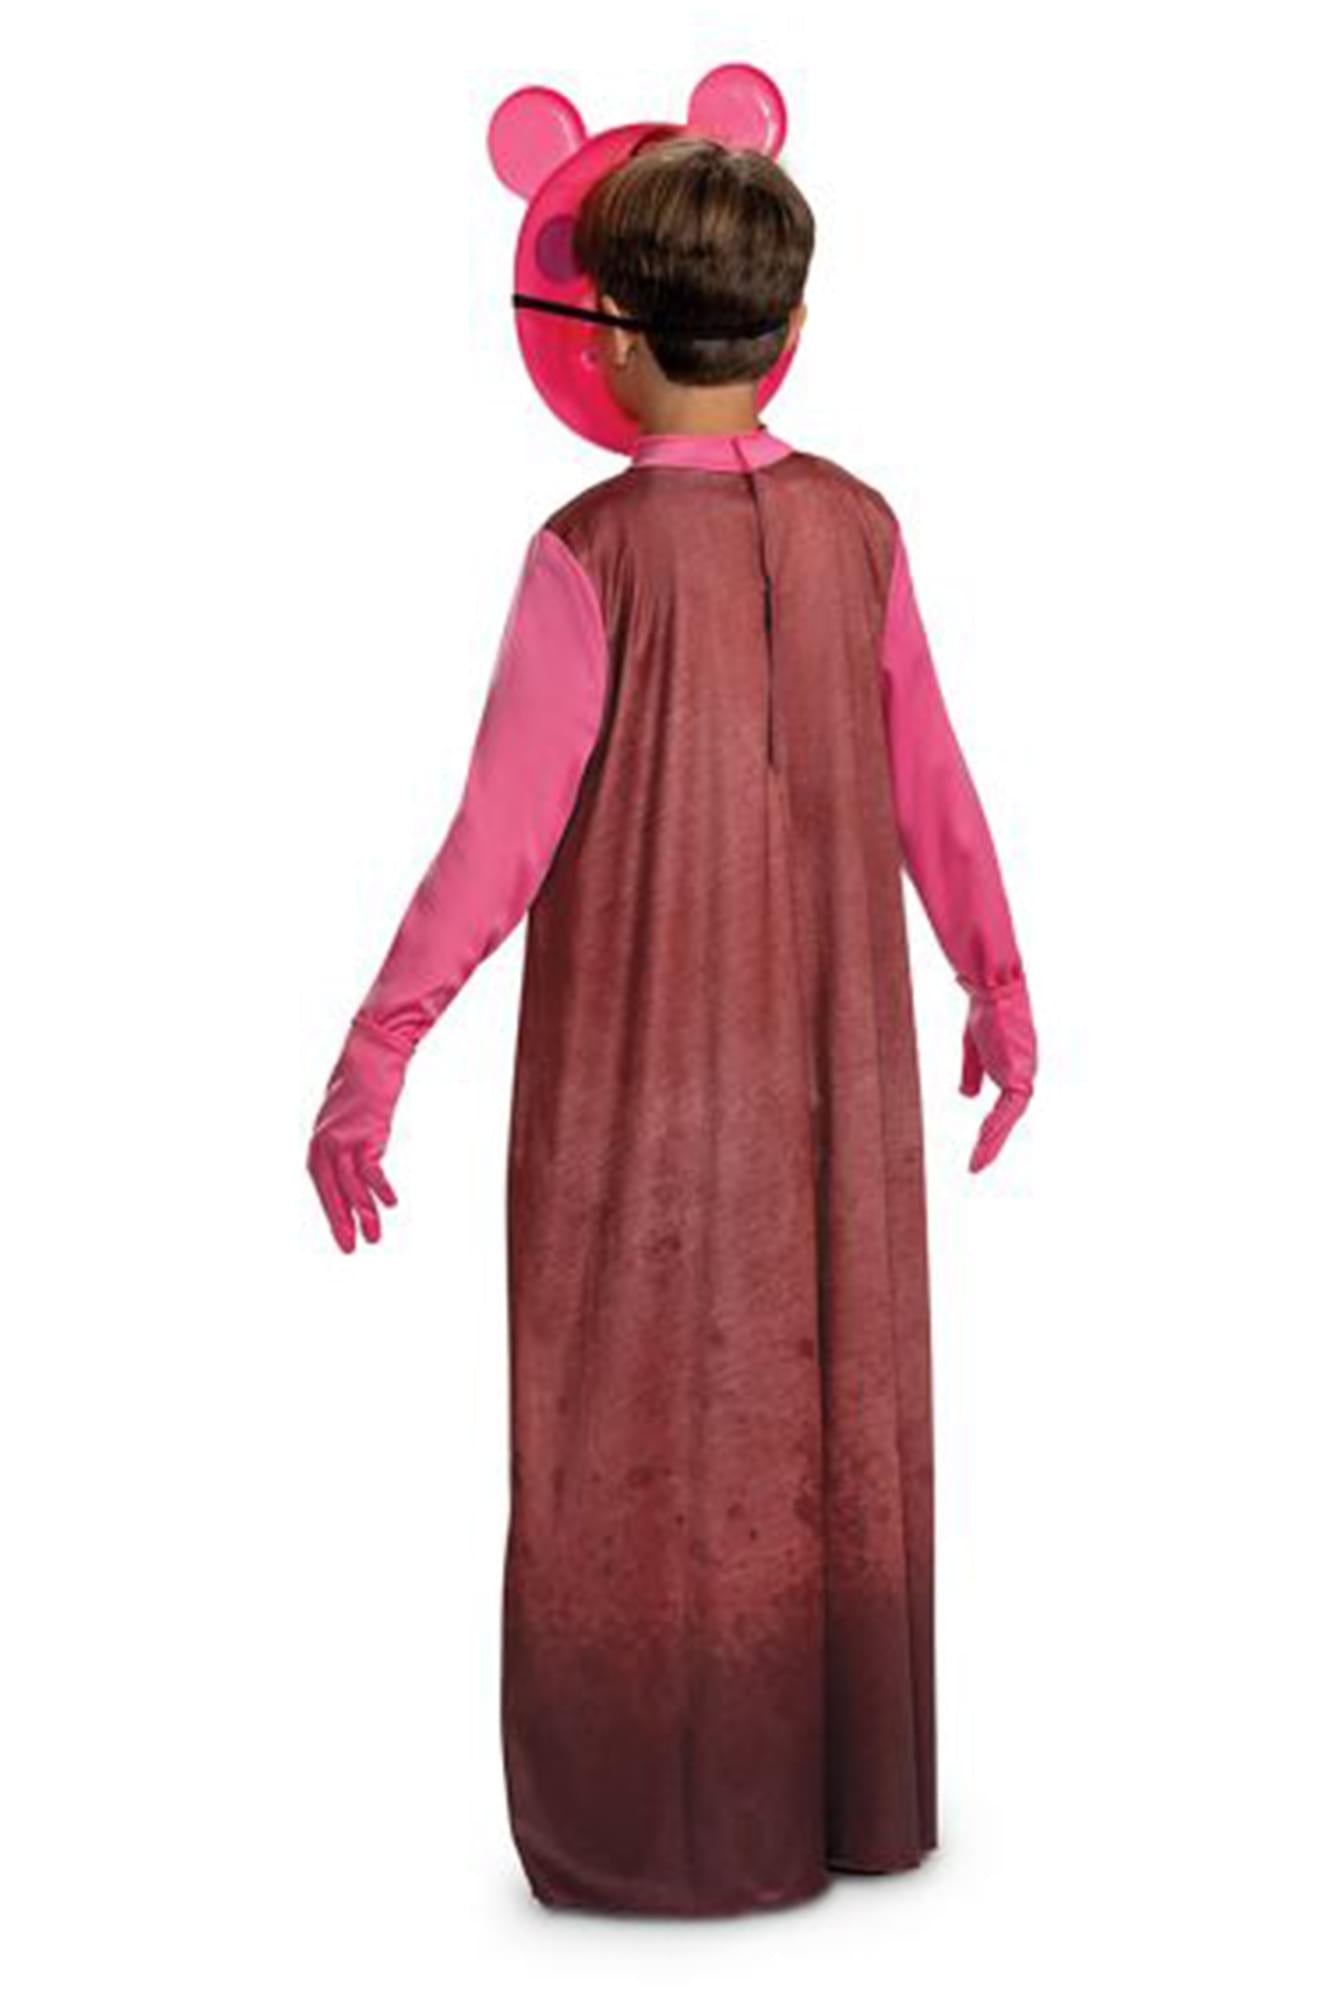 Piggy Classic Child Costume